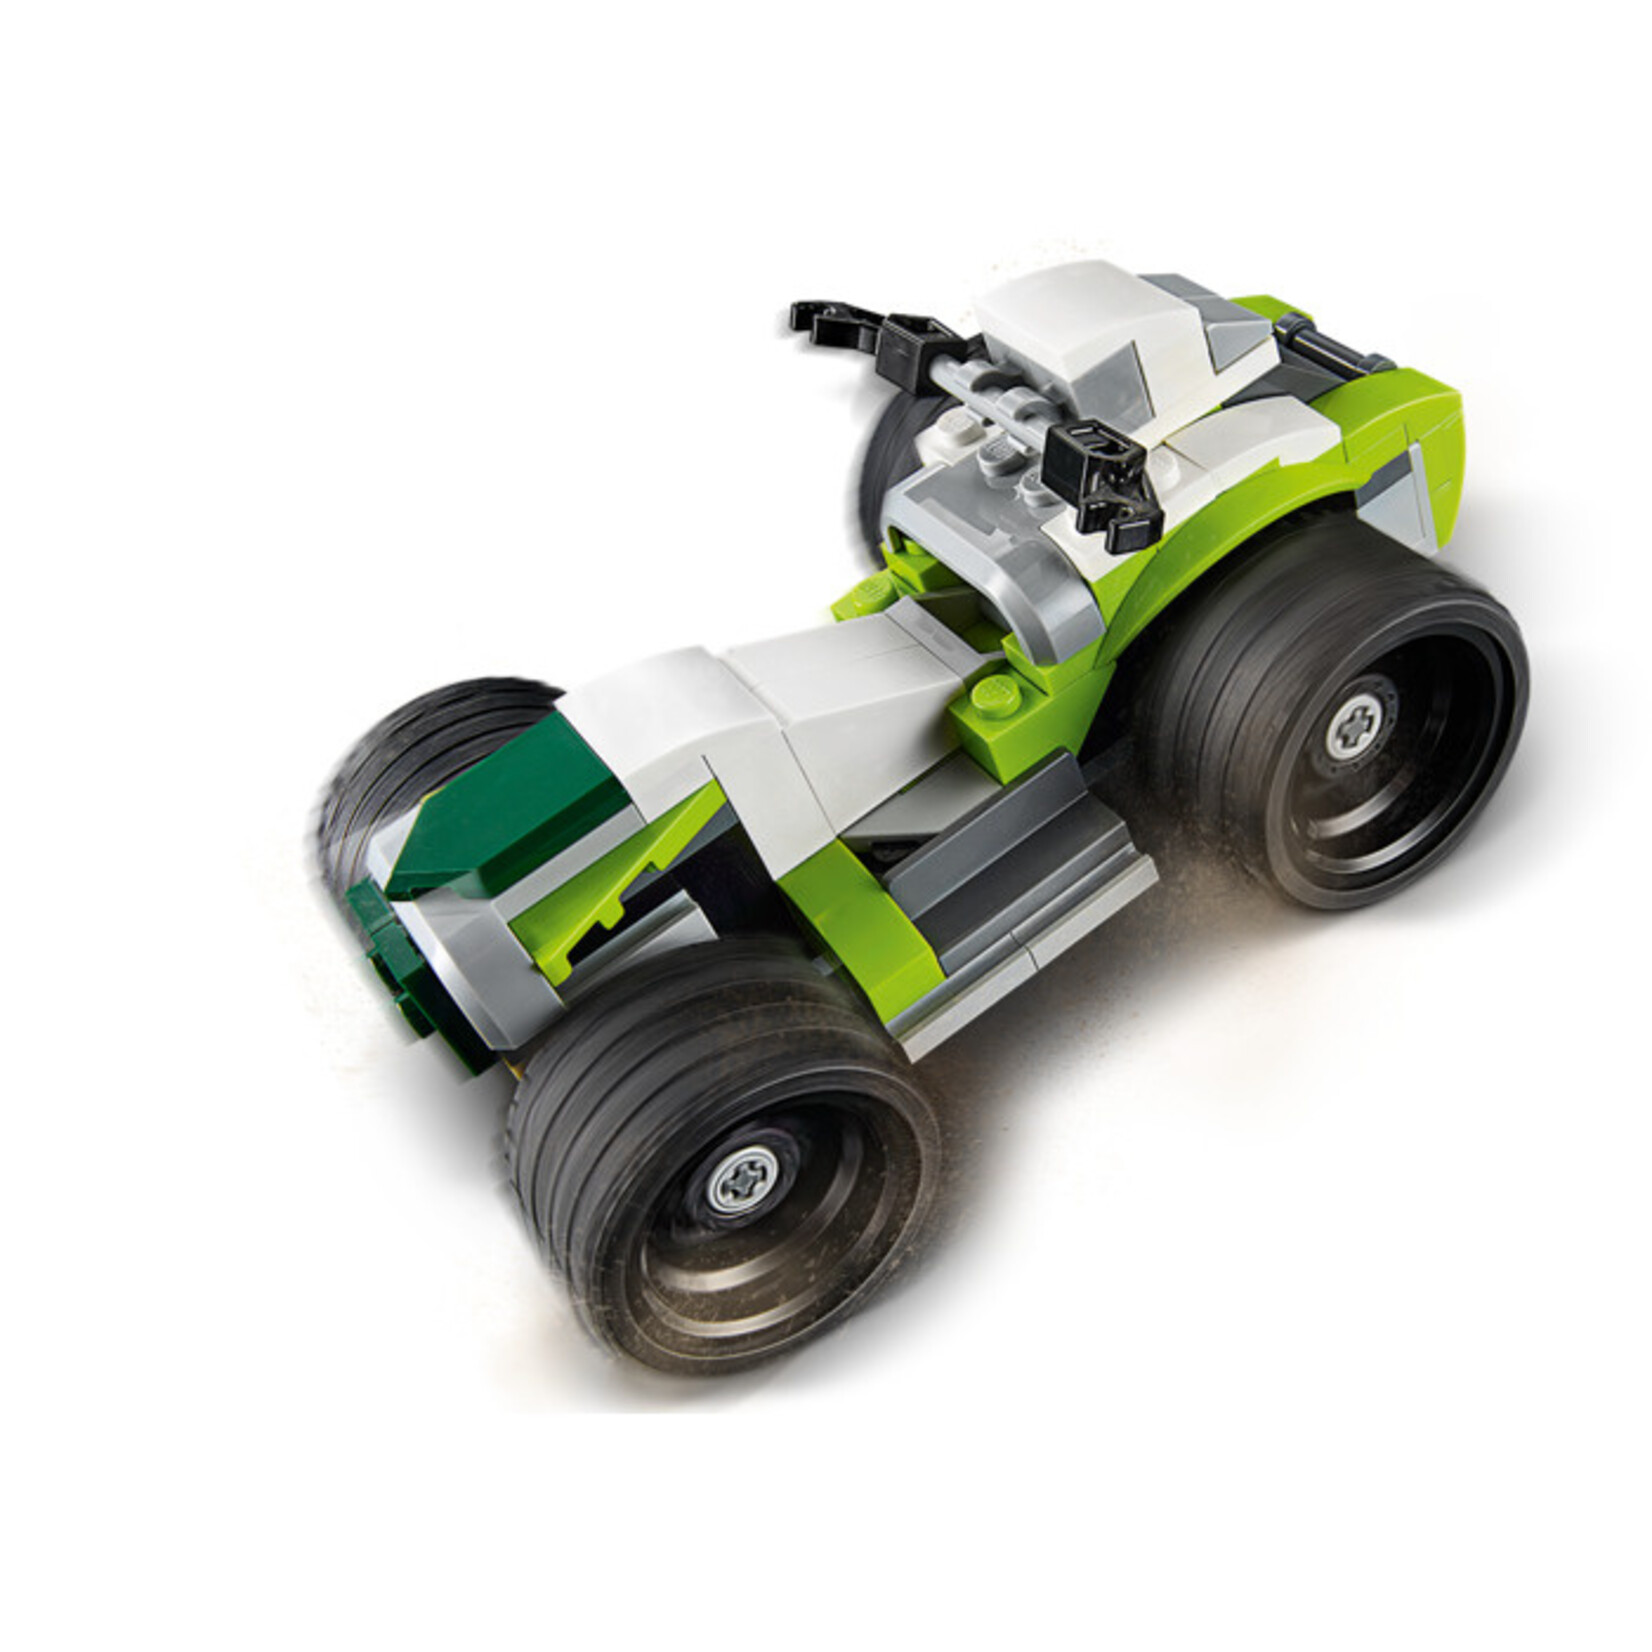 LEGO Raketwagen - 31103